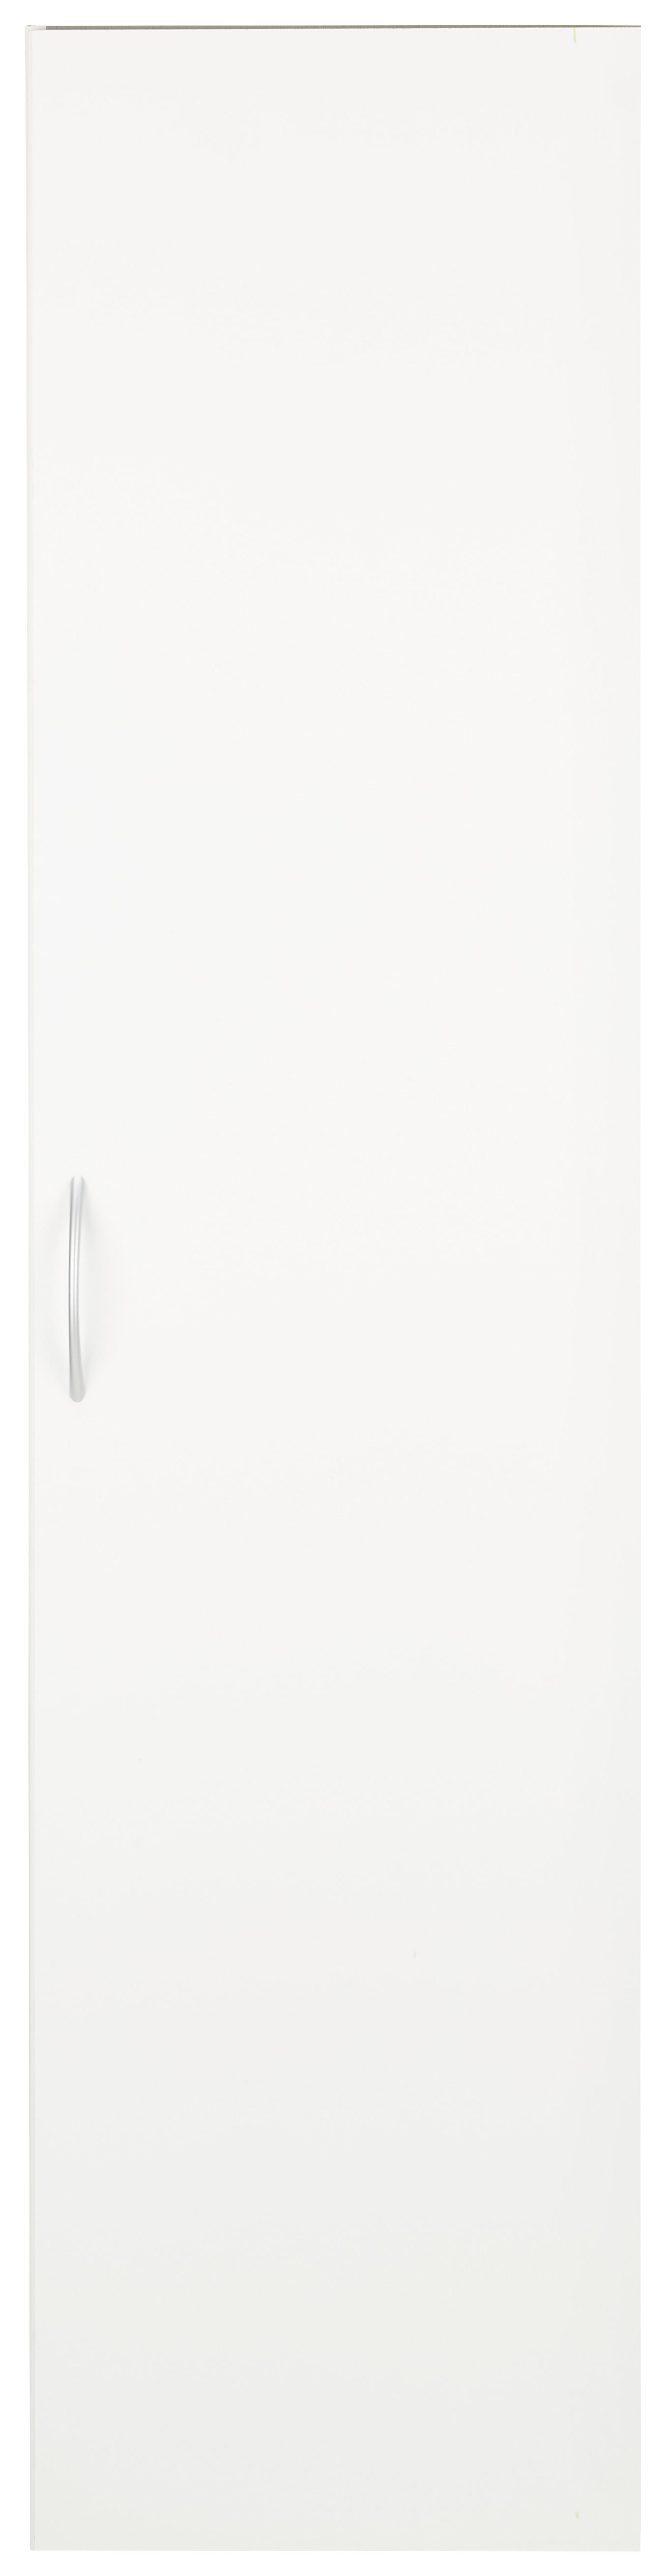 Víceúčelová Skříň Mrk - bílá/barvy hliníku, Konvenční, kompozitní dřevo/plast (45/185/40cm) - Modern Living